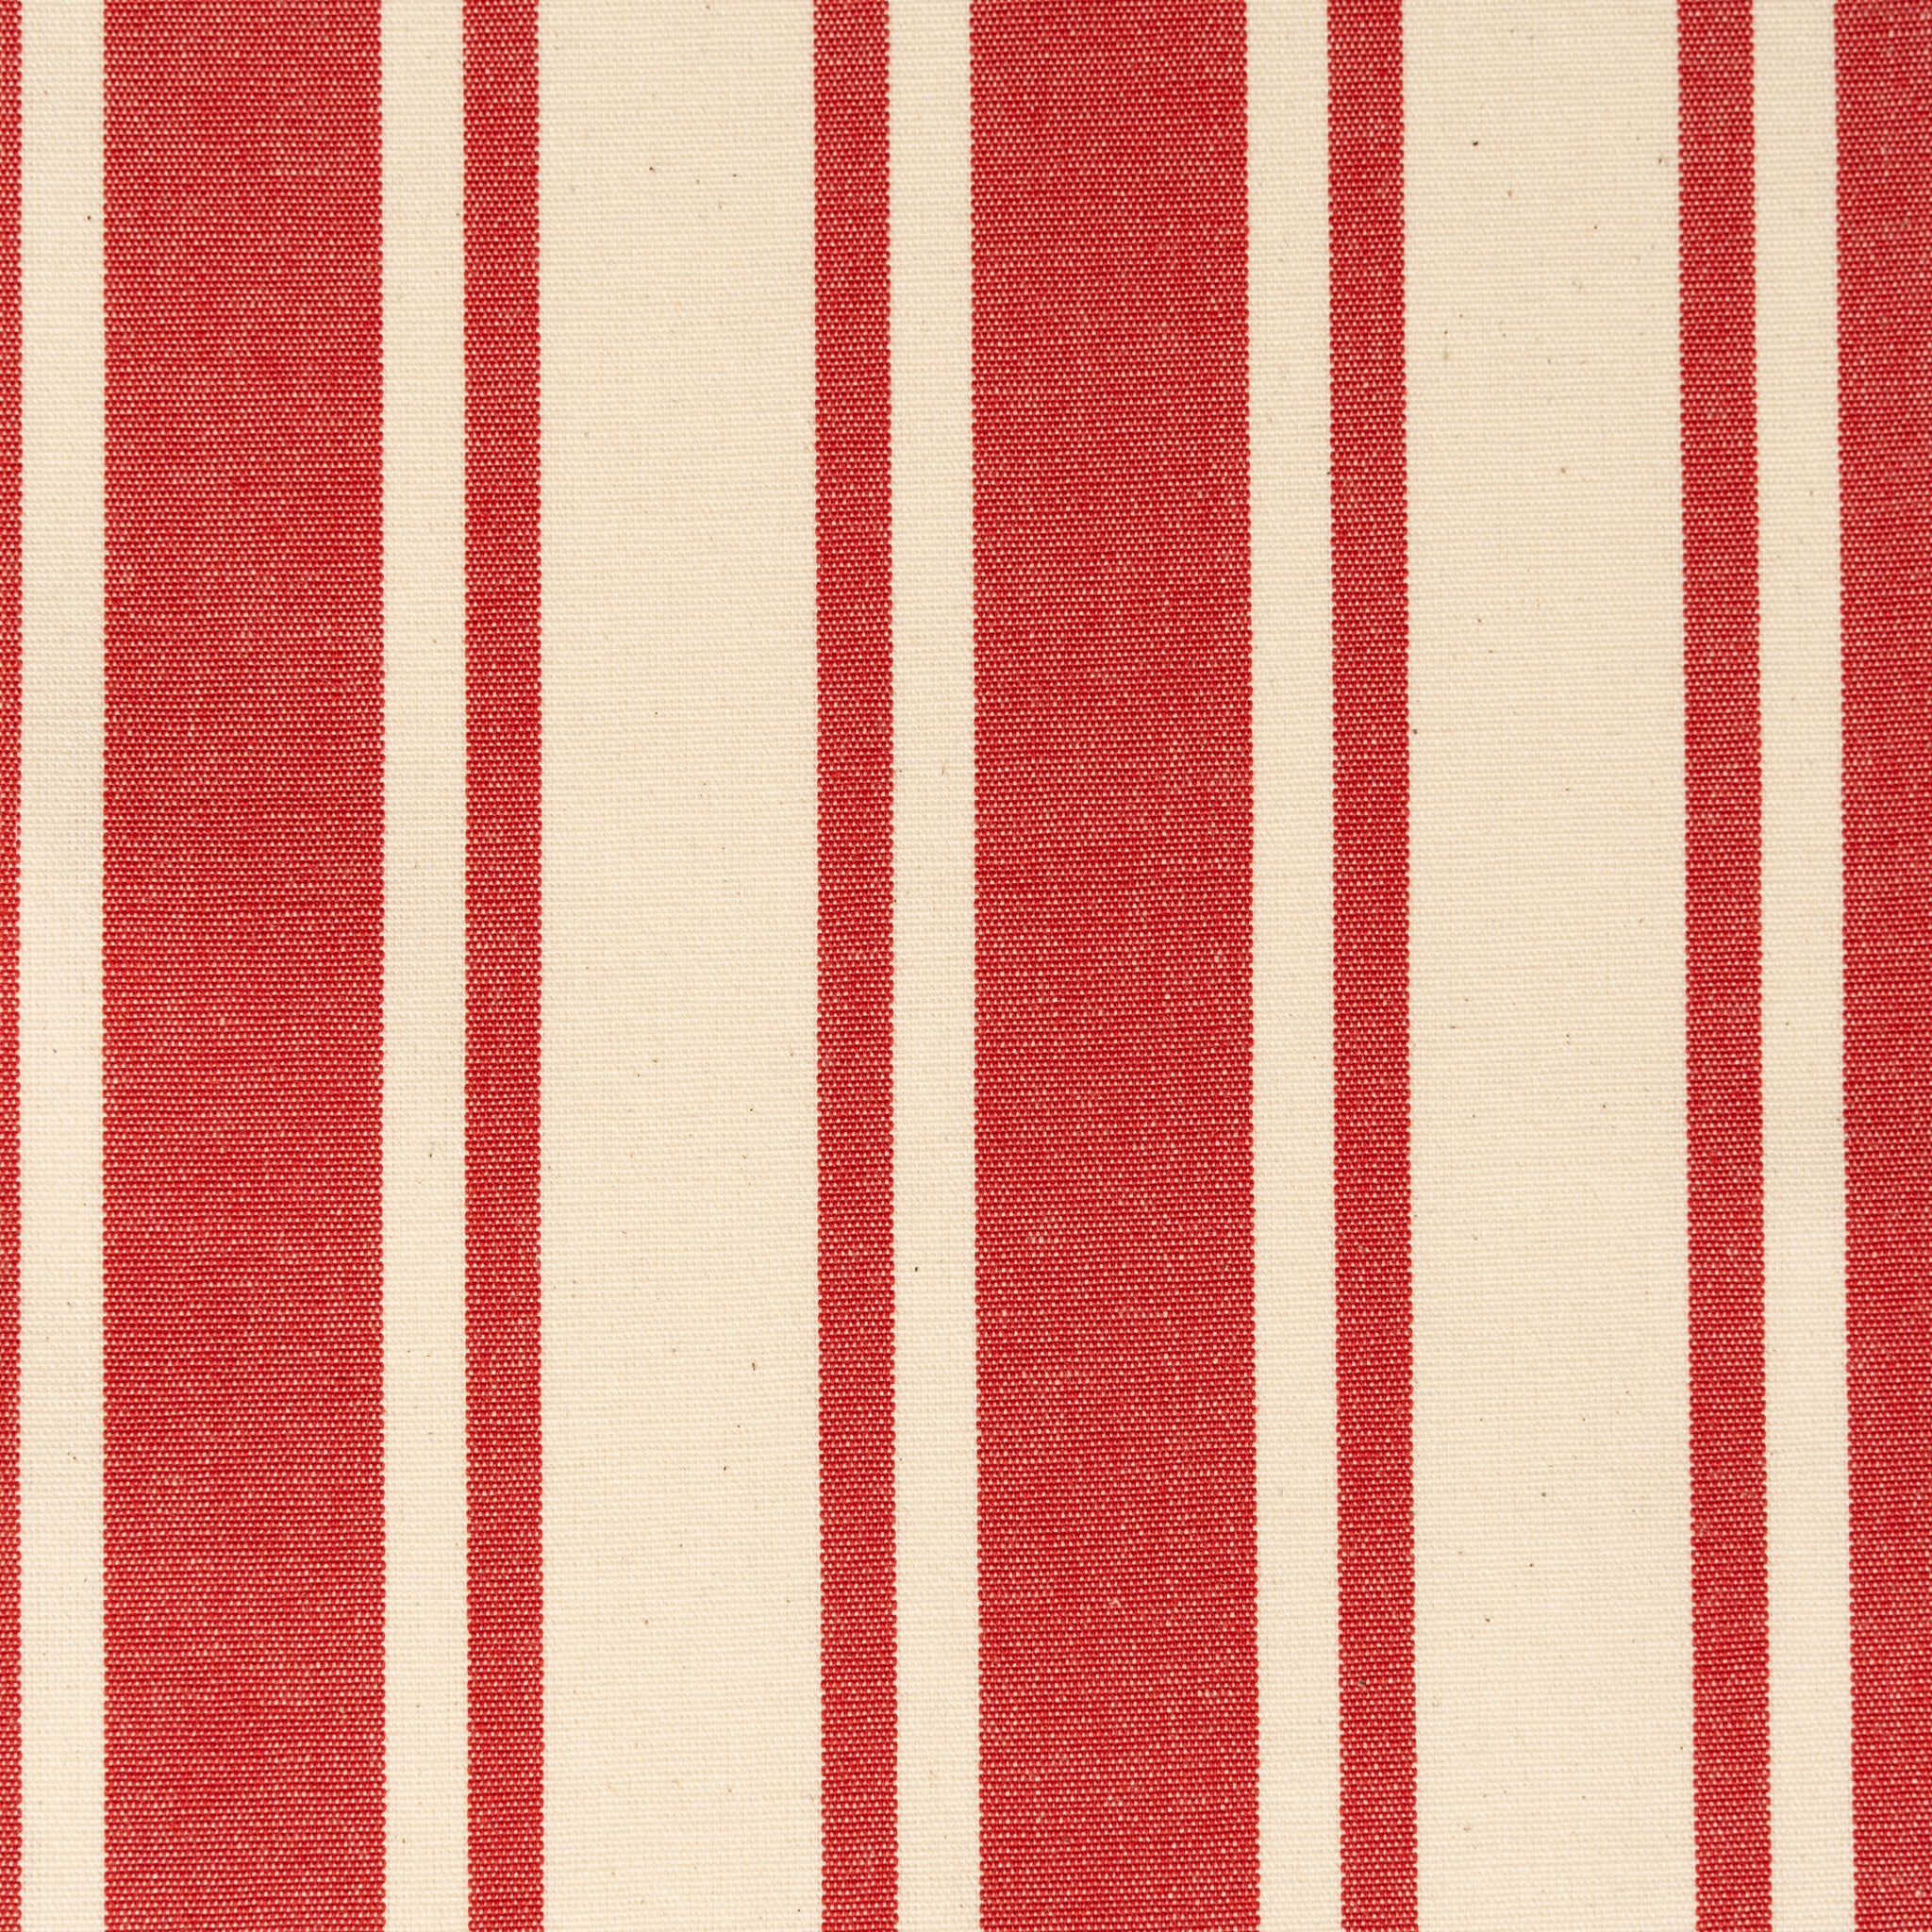 Woven Striped Fabric - Fishguard - Sunset